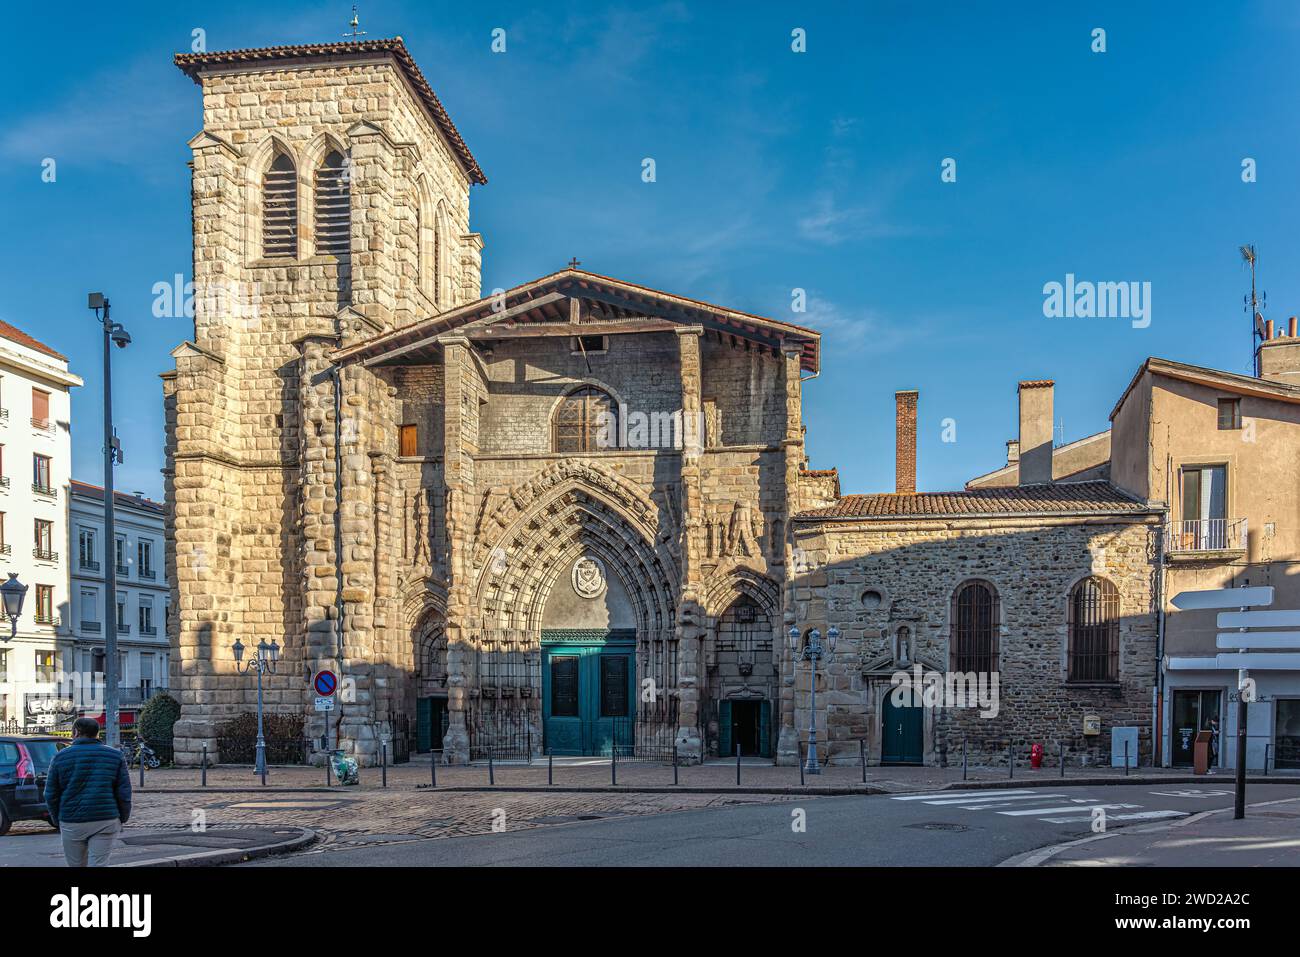 La fachada de estilo gótico con el campanario de la Grande Église de Saint-Étienne en el corazón del centro histórico de la ciudad.Saint-Étienne, Francia Foto de stock